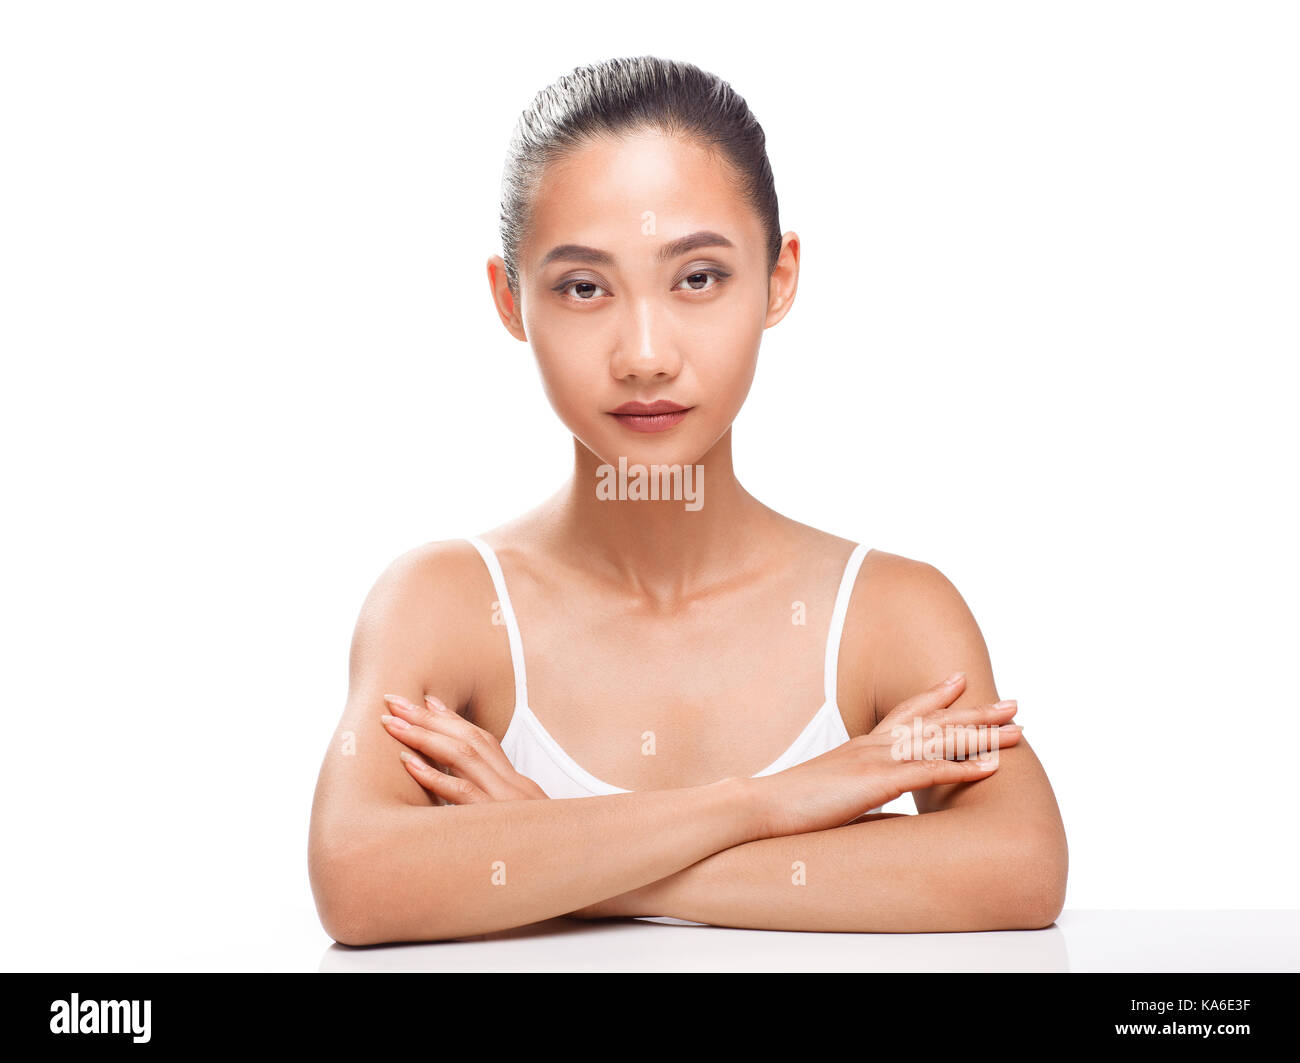 Beau modèle asiatique avec la peau bronzée parfaite et beauté visage. jeune femme à la caméra. studio portrait isolé sur fond blanc Banque D'Images